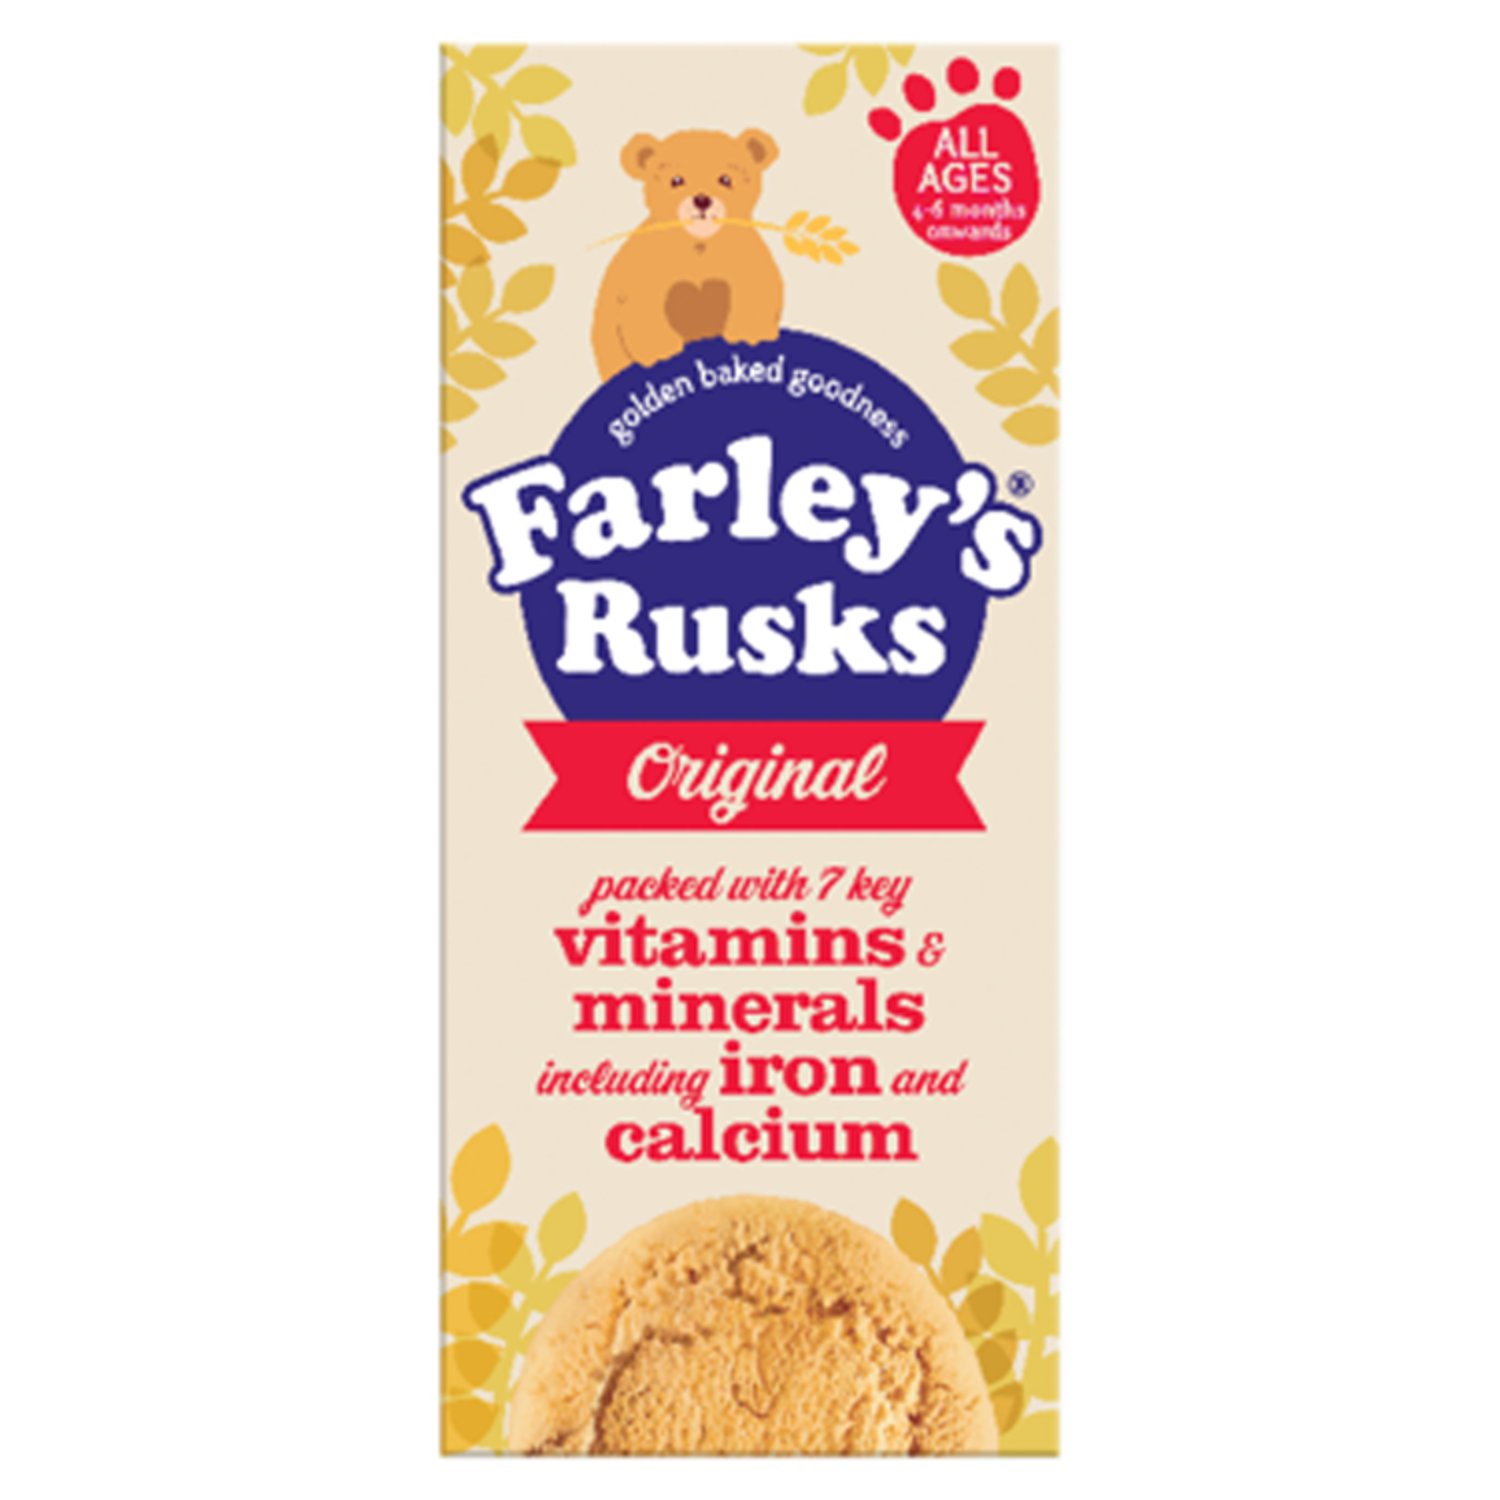 Farley's Rusks Original 6 Months + 9 Pack (150 g)